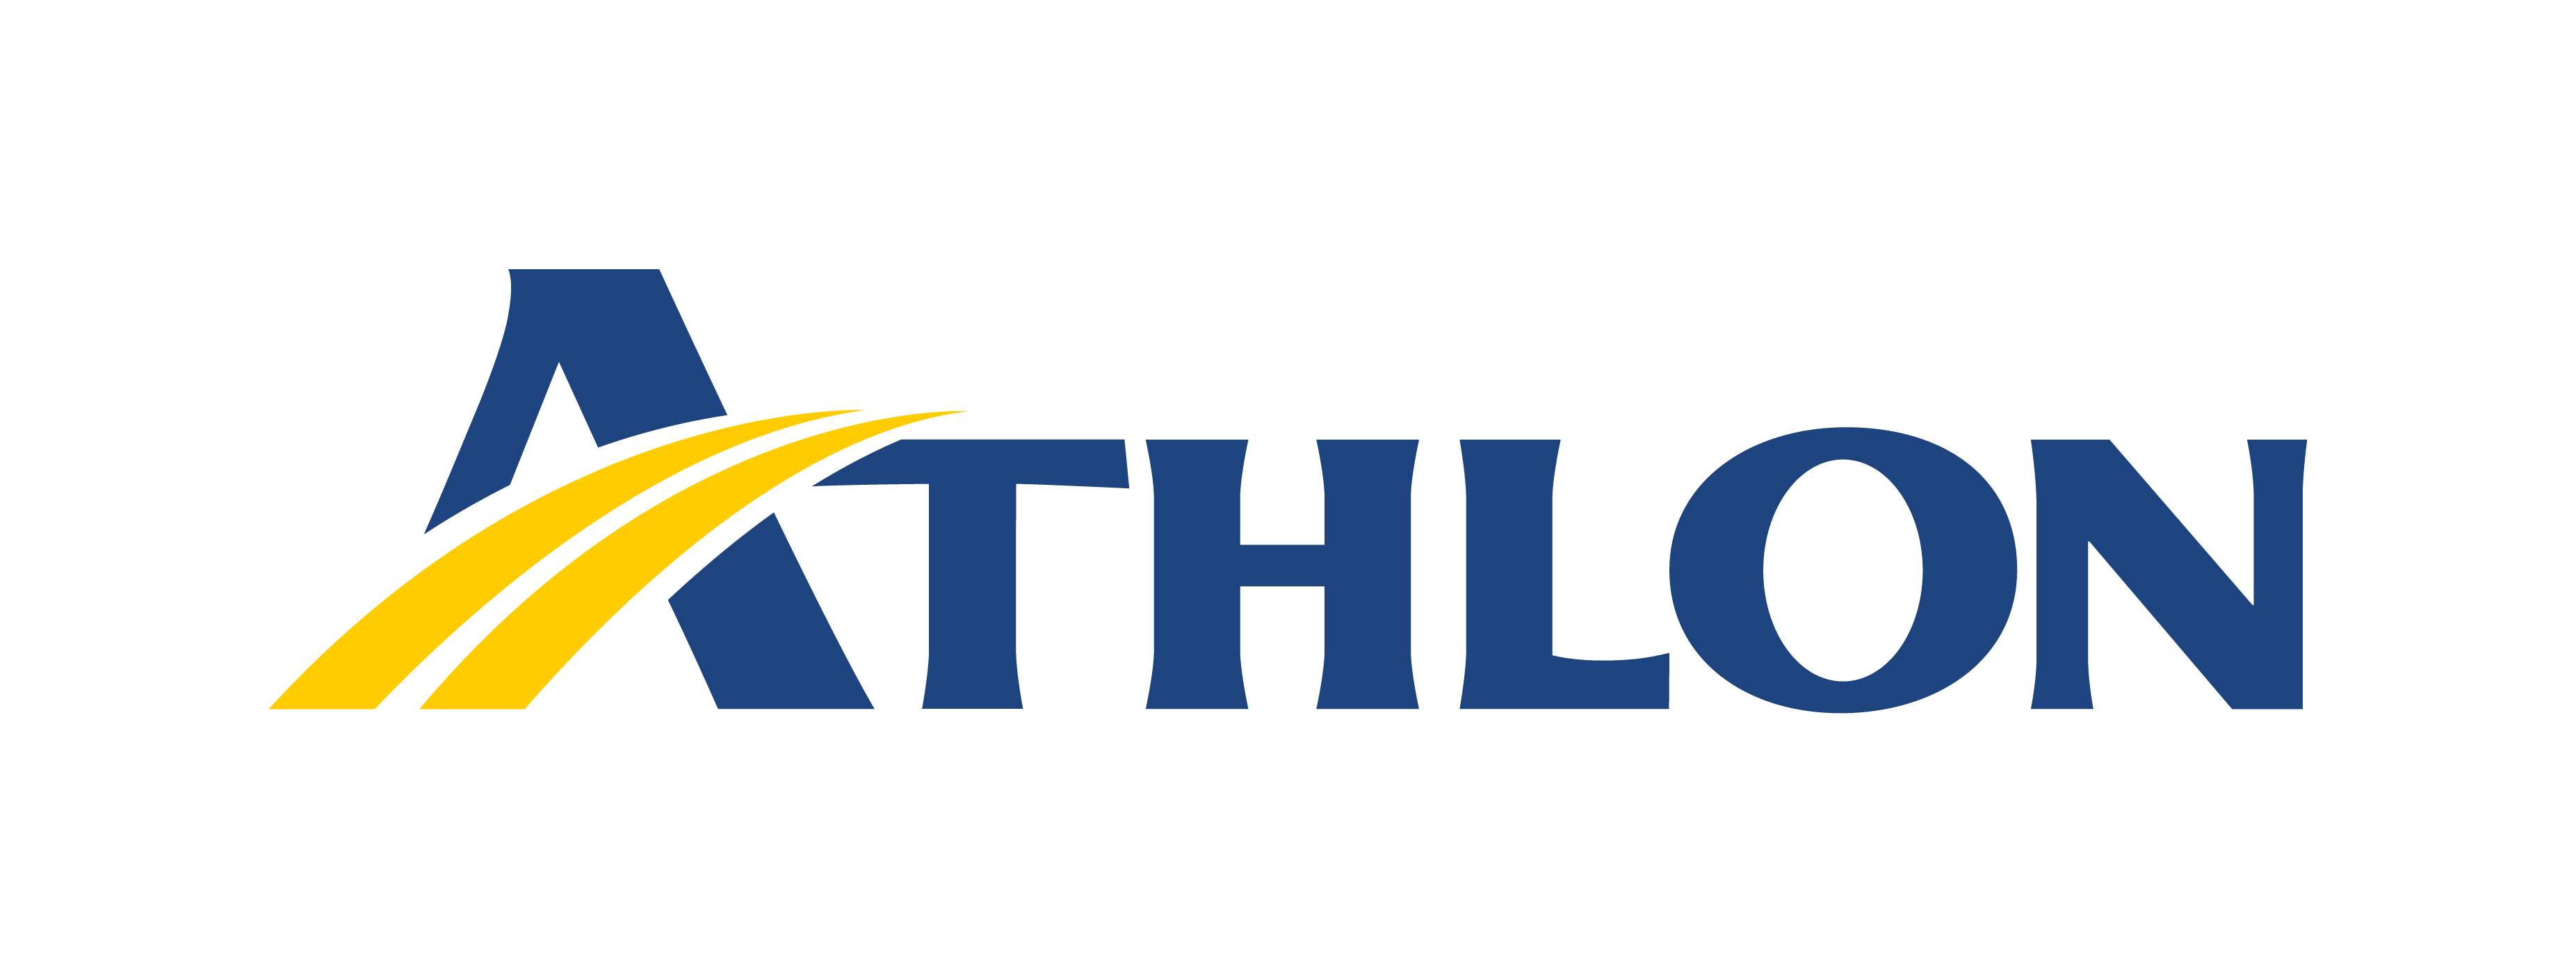 Athlon_logo